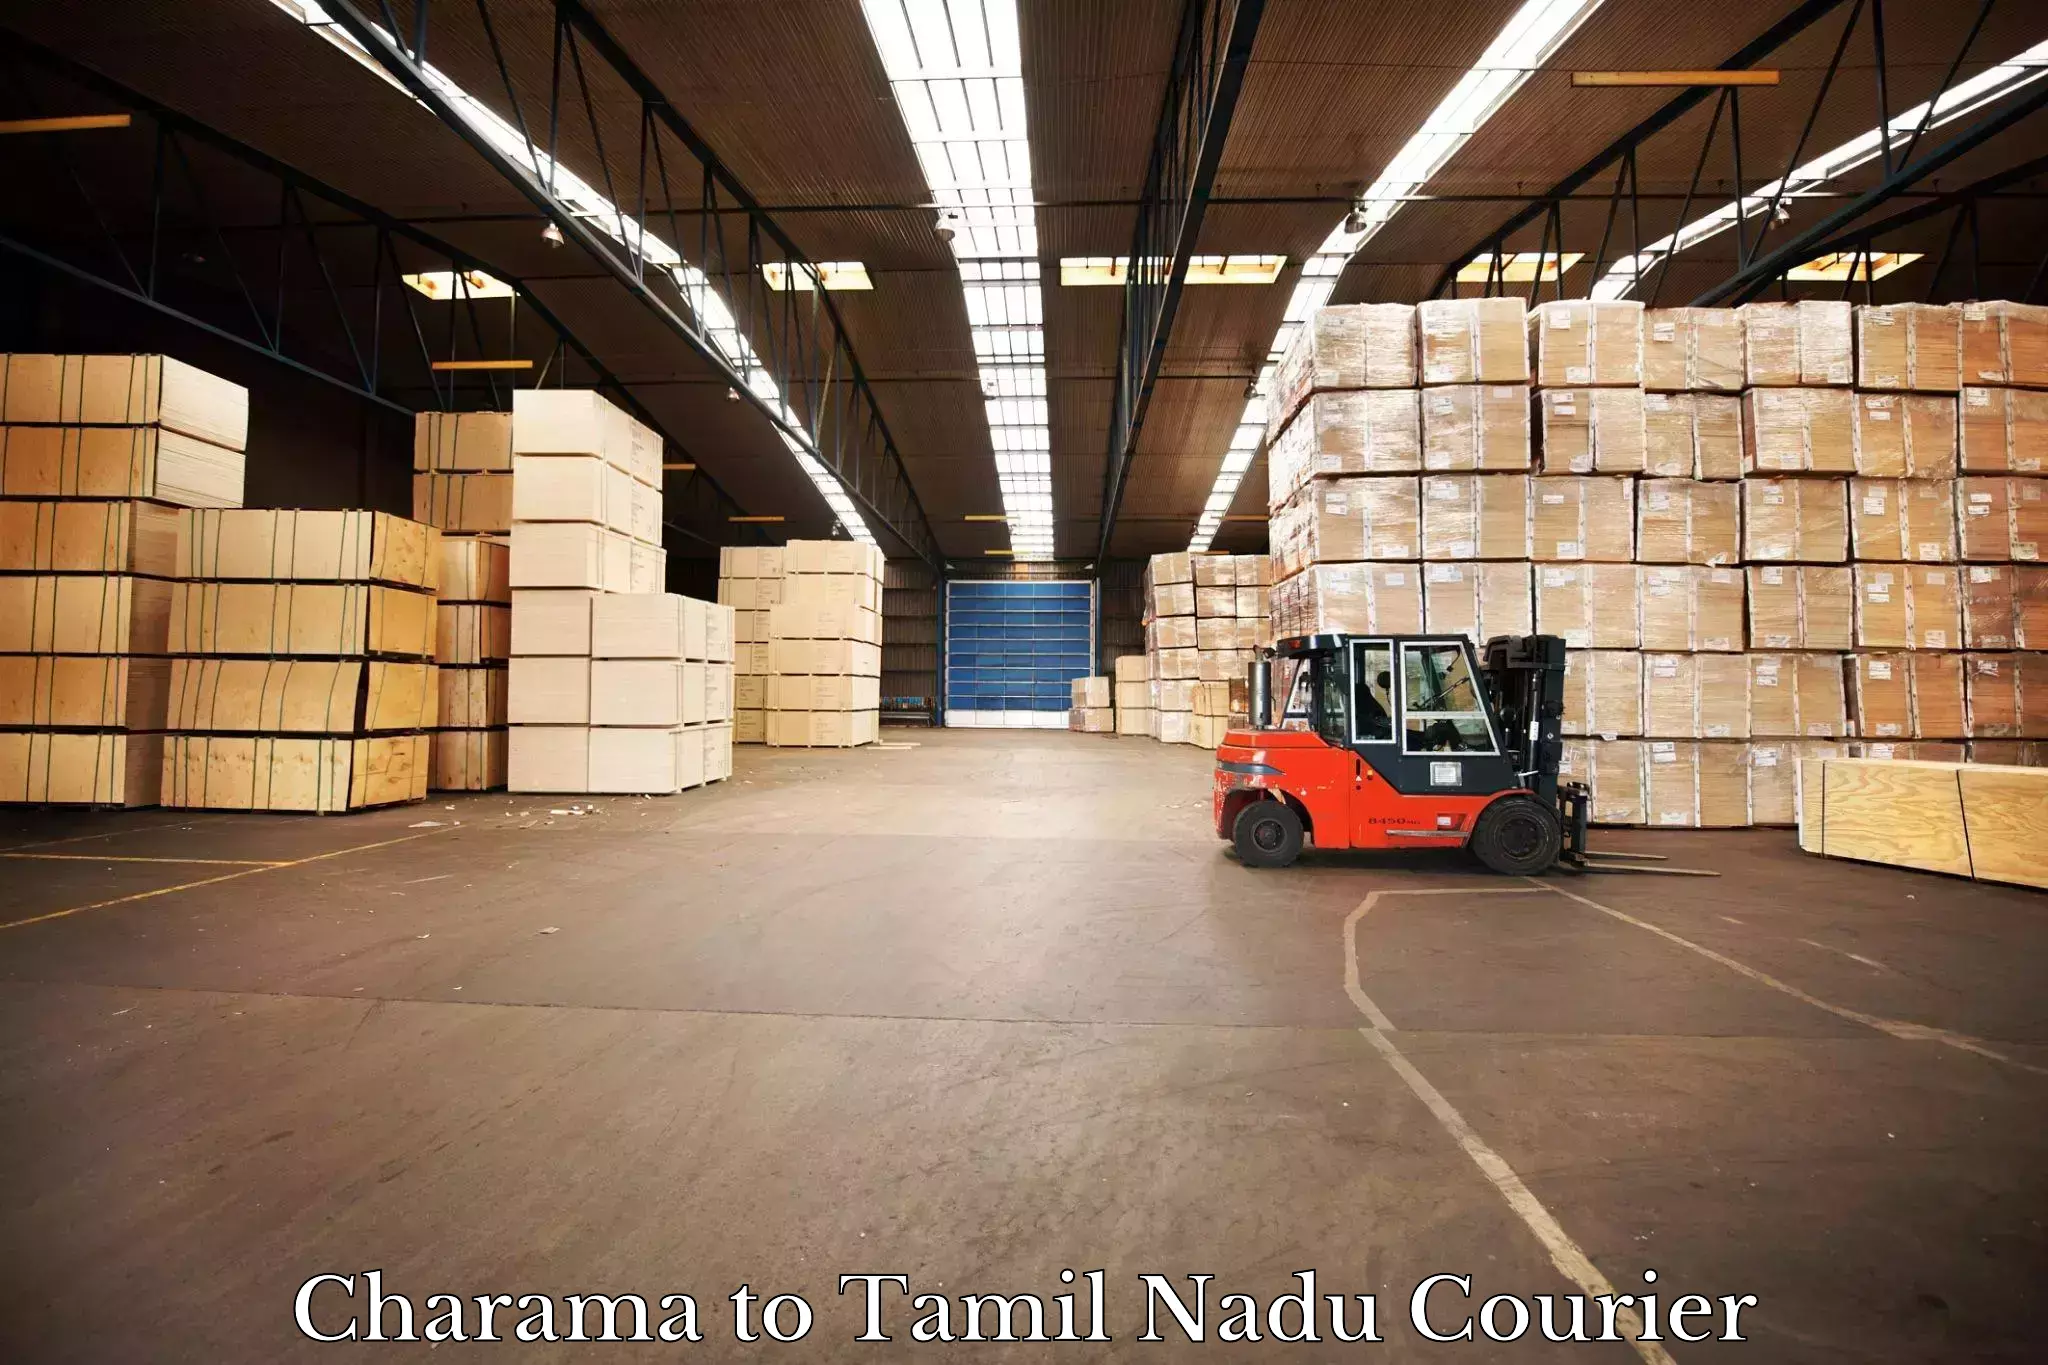 User-friendly delivery service Charama to Gujiliamparai